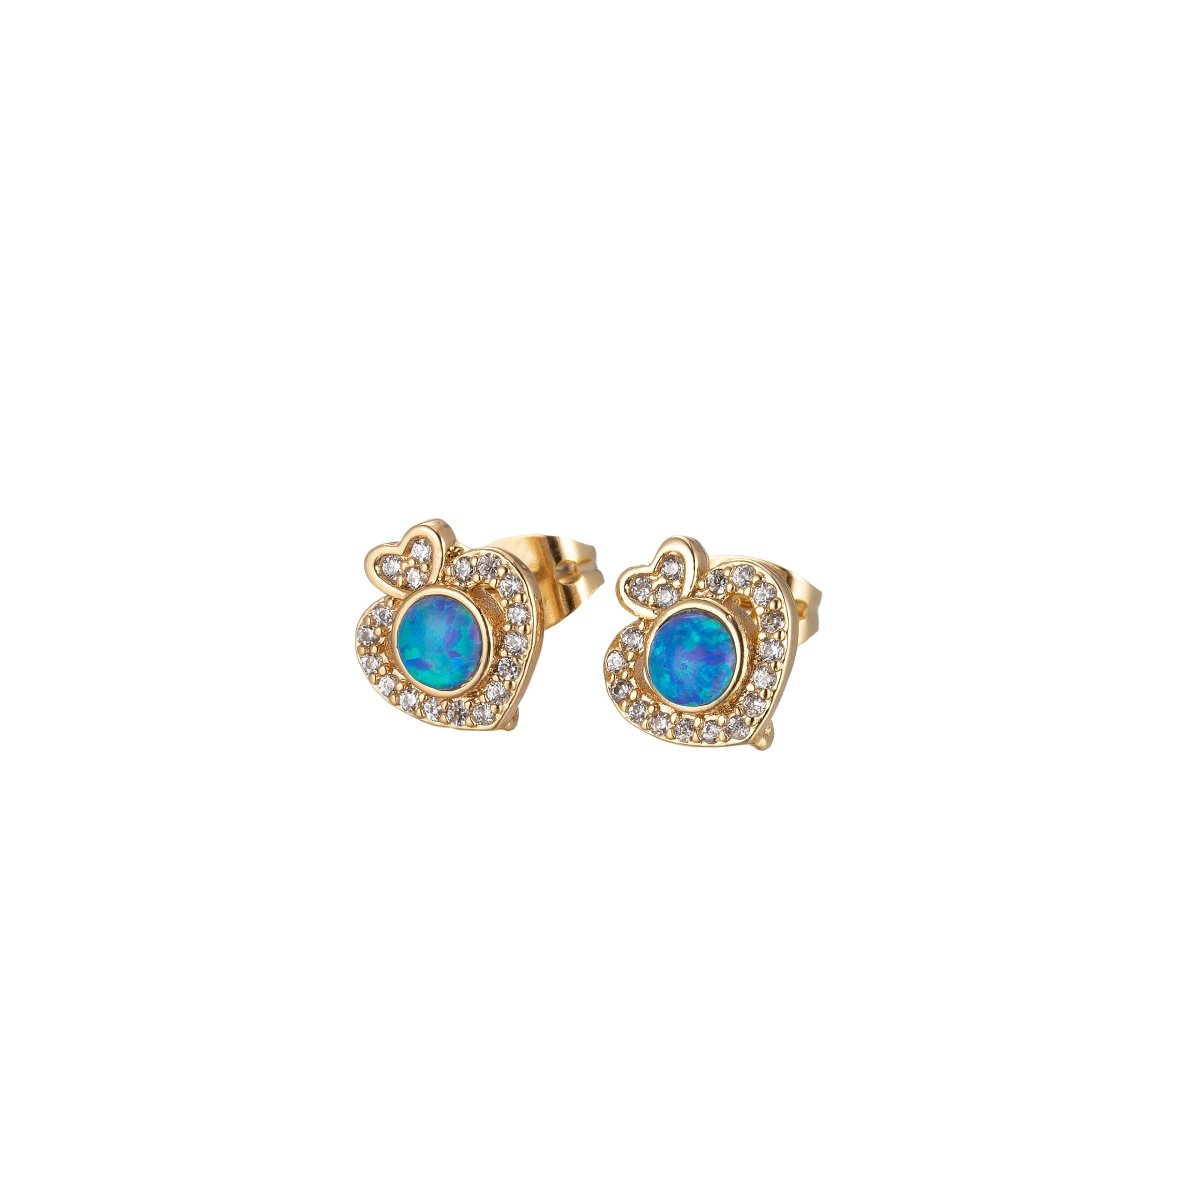 Mini Opal Heart Stud Earring Cartilage Earring, Gold Hear stud, dainty gold Minimalist earring Pushback stud L-513 L-514 - DLUXCA